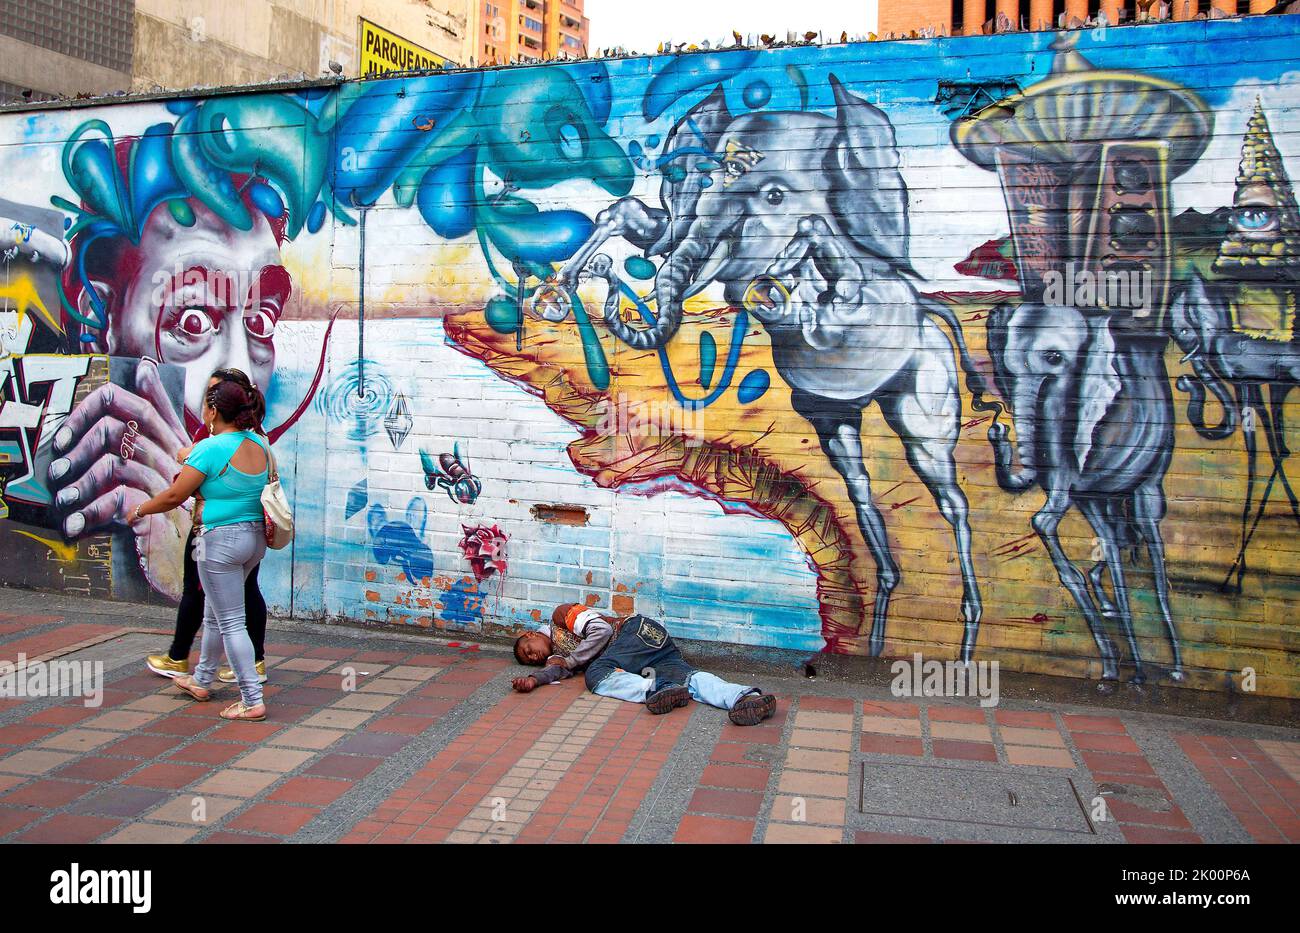 Colombia, Medellín, hombre sin hogar está acostado frente a una copia de Dalí que pintaba la pared. Foto de stock